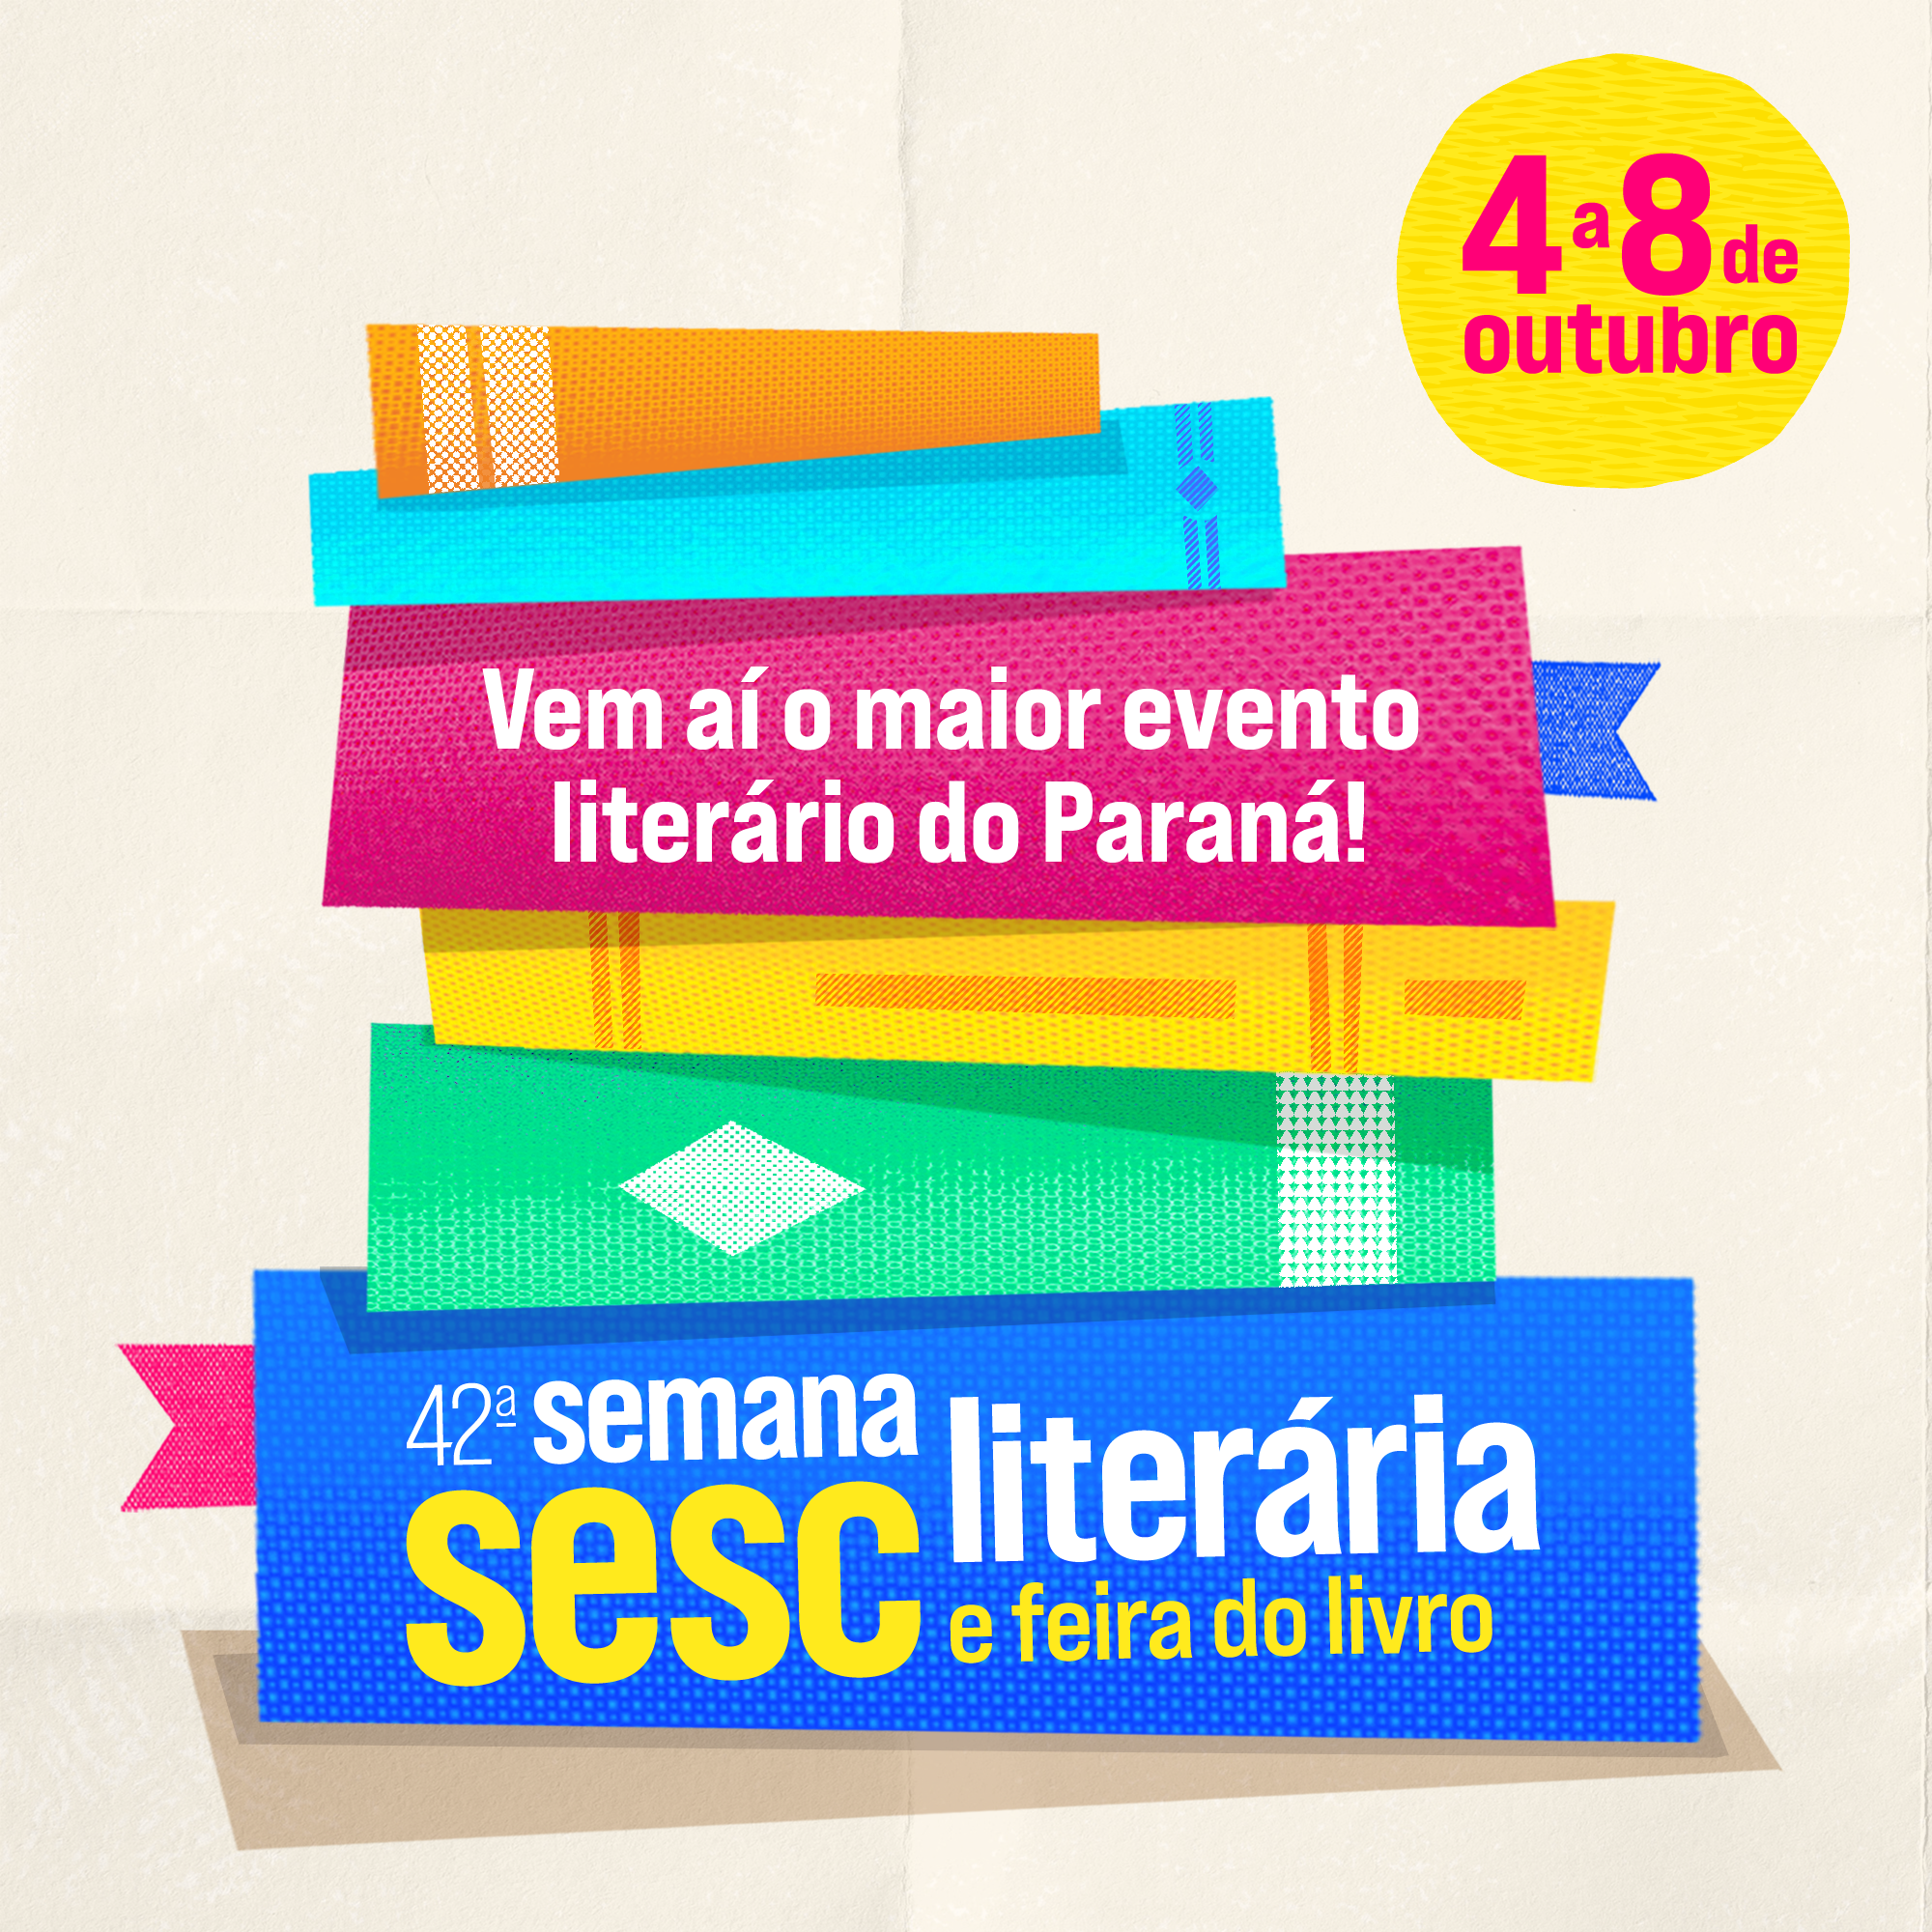 Paraná lança programa de livros digitais para formar novos leitores